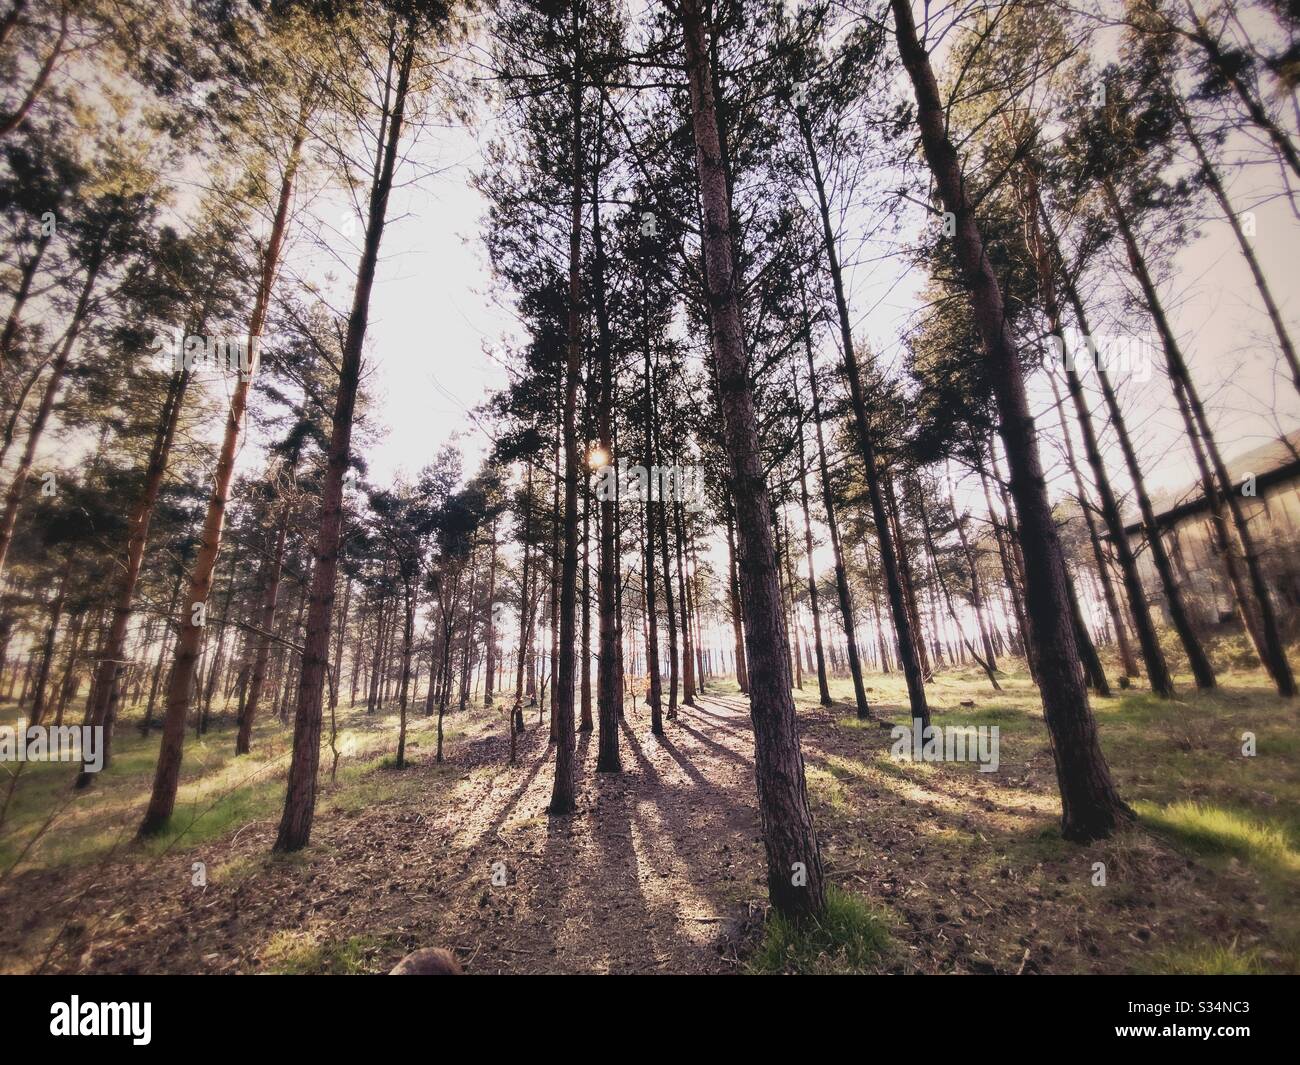 Alti pini nella foresta densa rurale. Scena naturale di trekking in sentiero boscoso. Vista ad angolo basso e ampio di rami, tronchi e cielo. Retroilluminata con tramonto dietro i boschi. Foto Stock